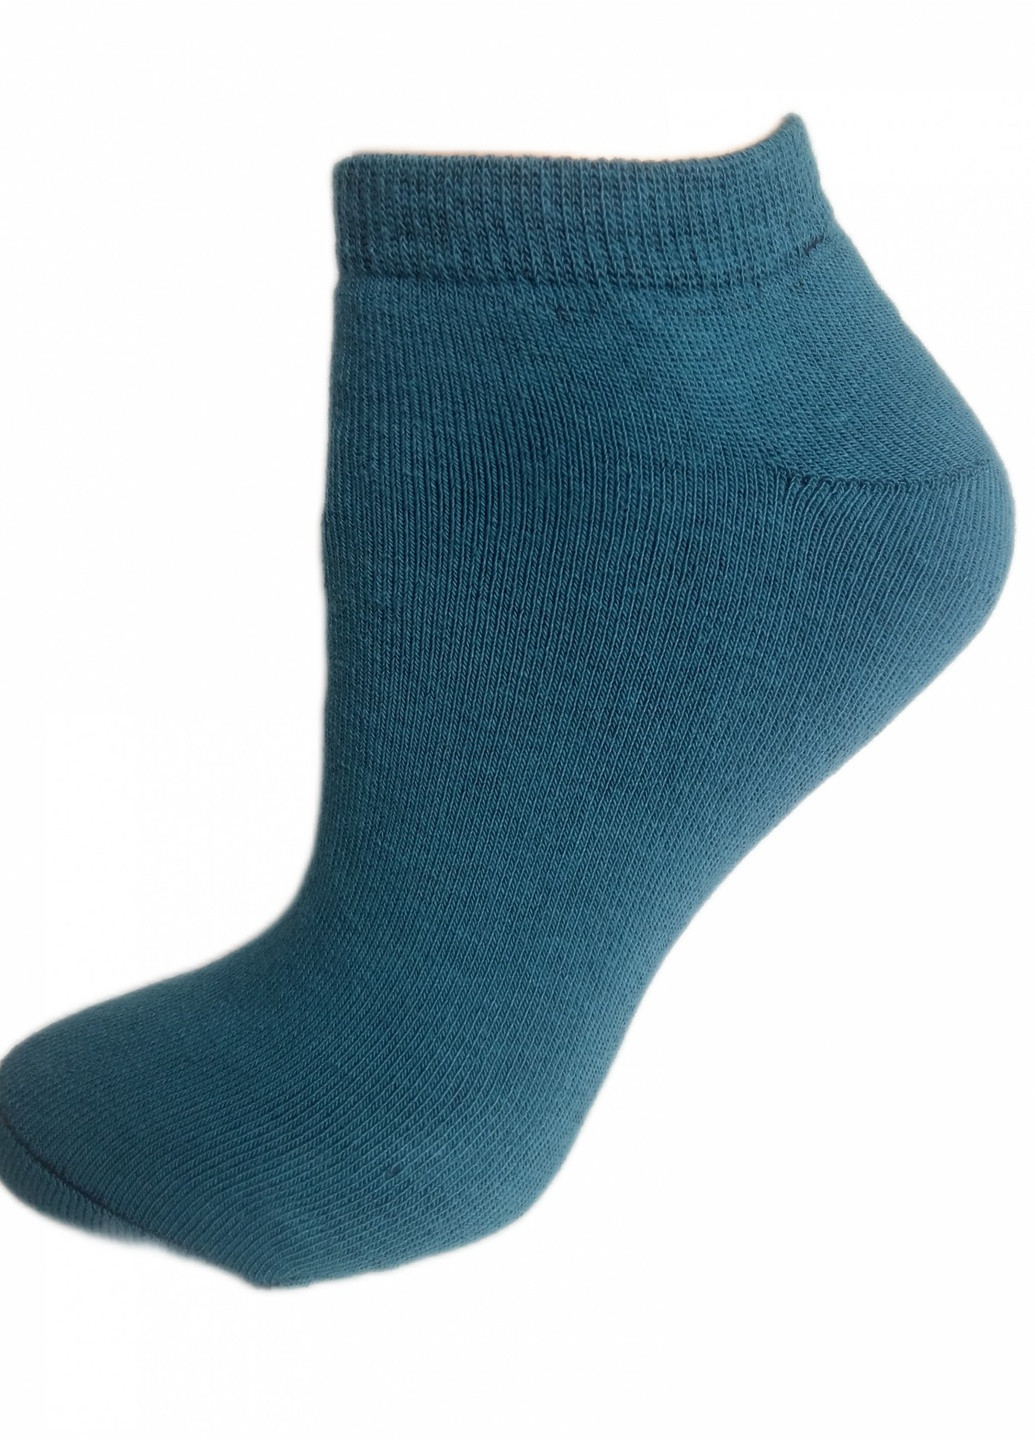 Шкарпетки плюш ТМ "Нова пара" коротка висота 108 НОВА ПАРА Короткая сіро-сині повсякденні